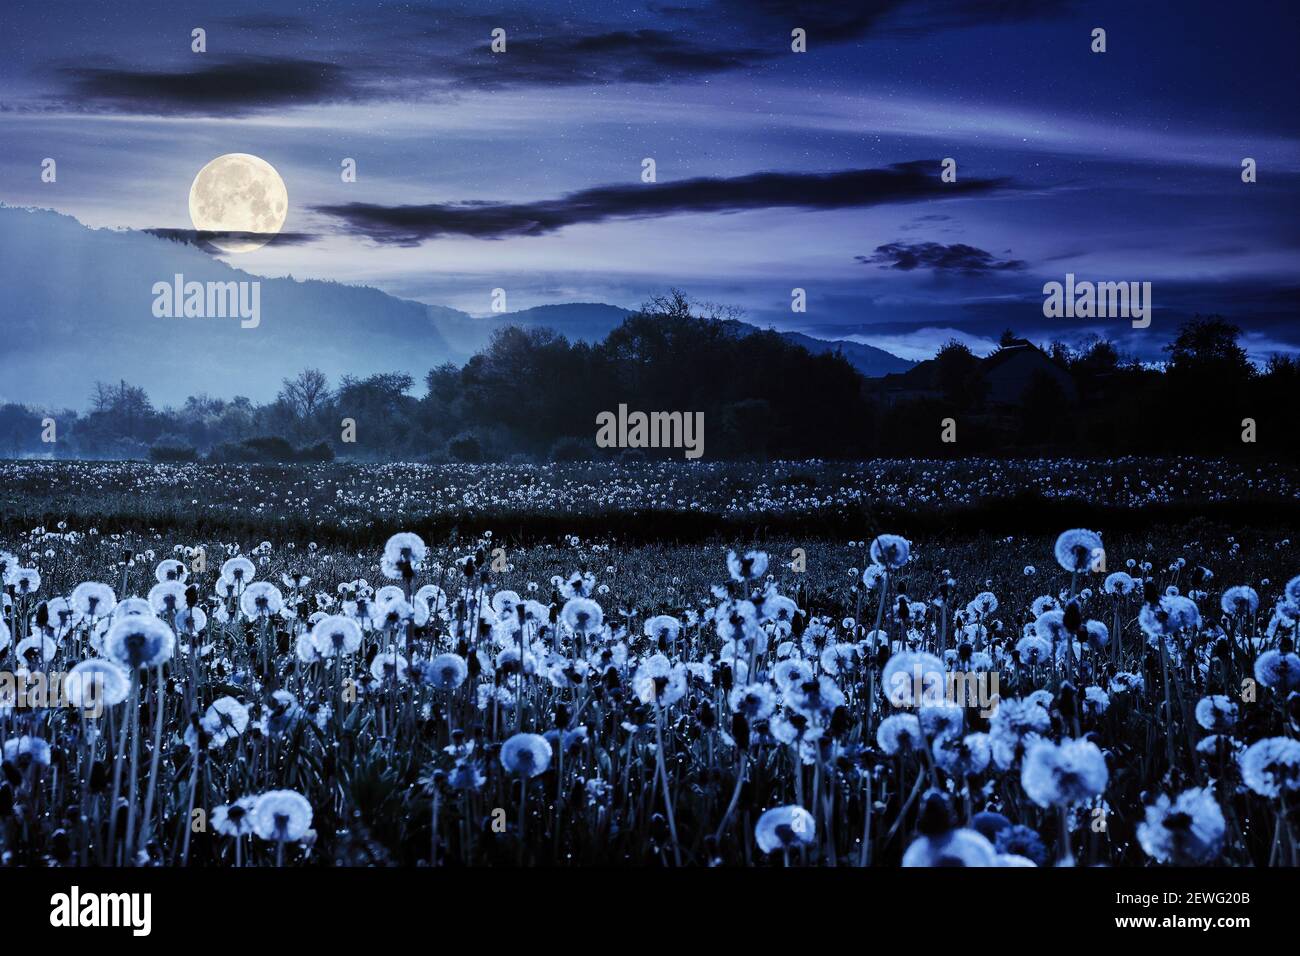 campo di dente di leone in paesaggio rurale di notte. splendido paesaggio naturale con piante infestanti in piena luce lunare. nuvole sul cielo sopra il lontano moun Foto Stock